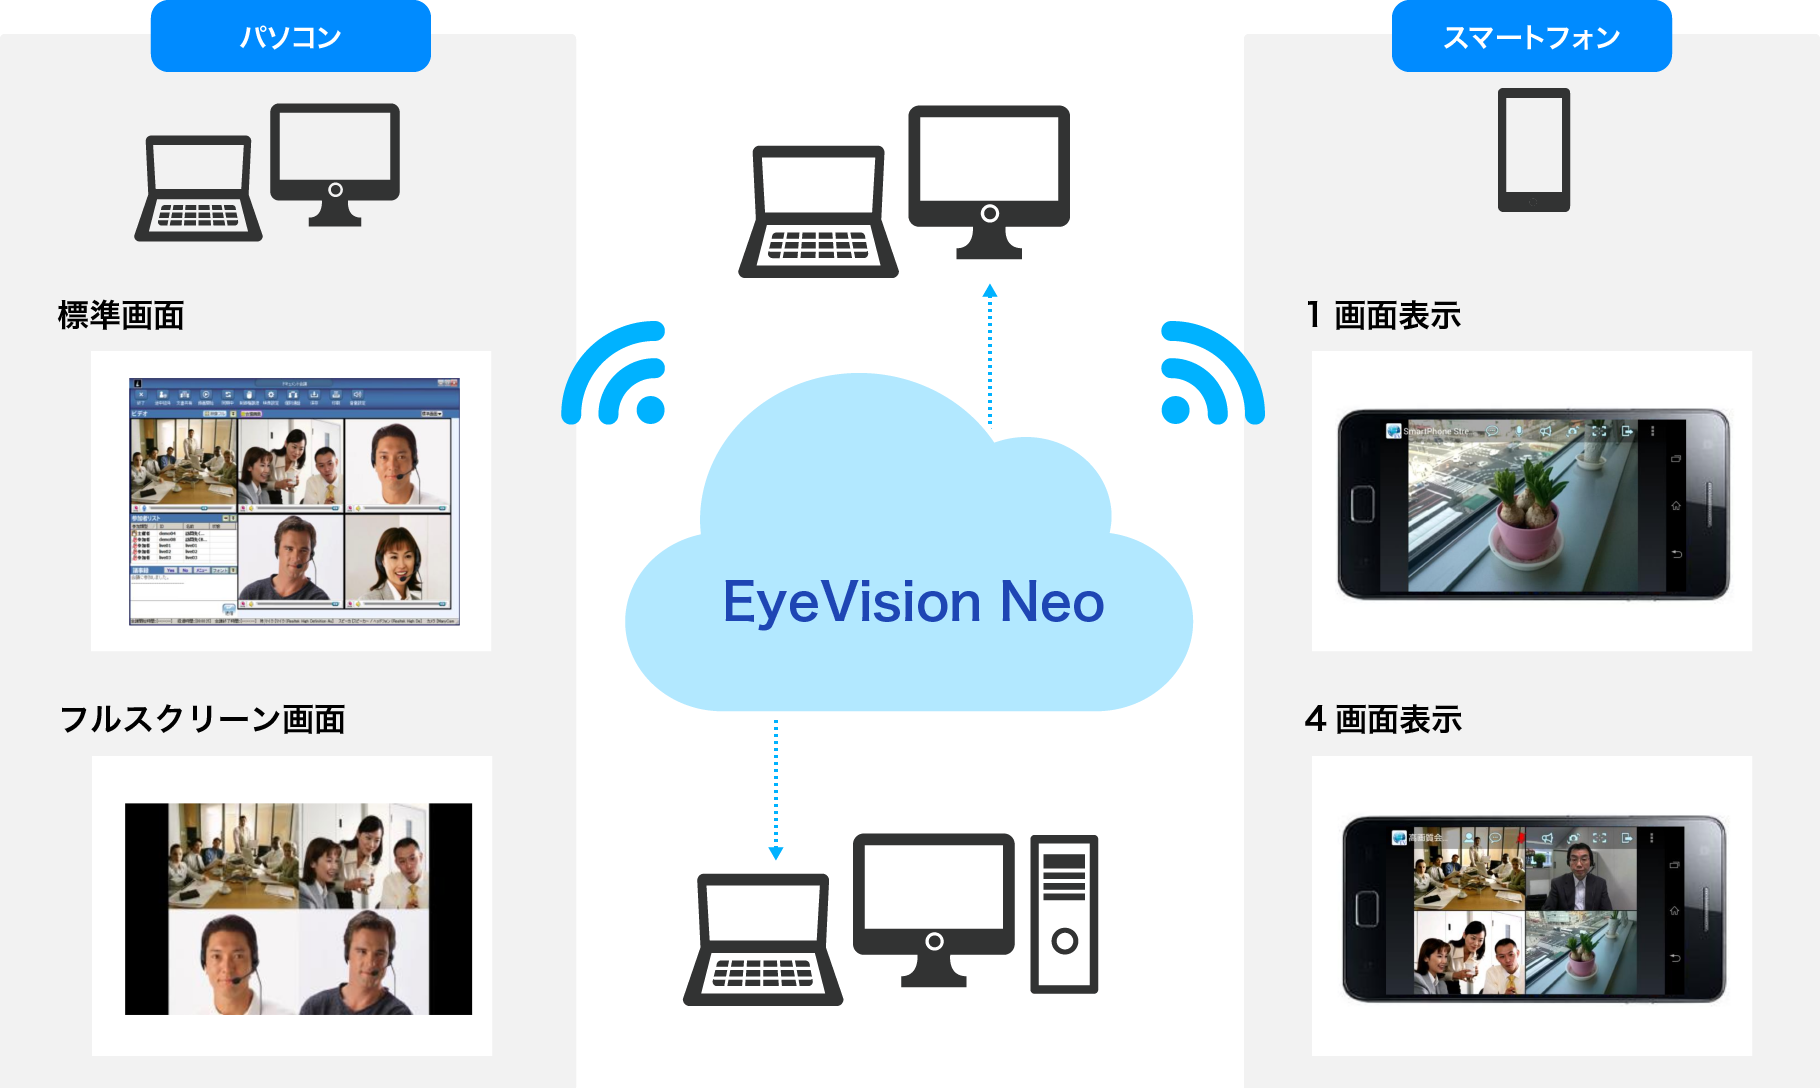 EyeVision Neo